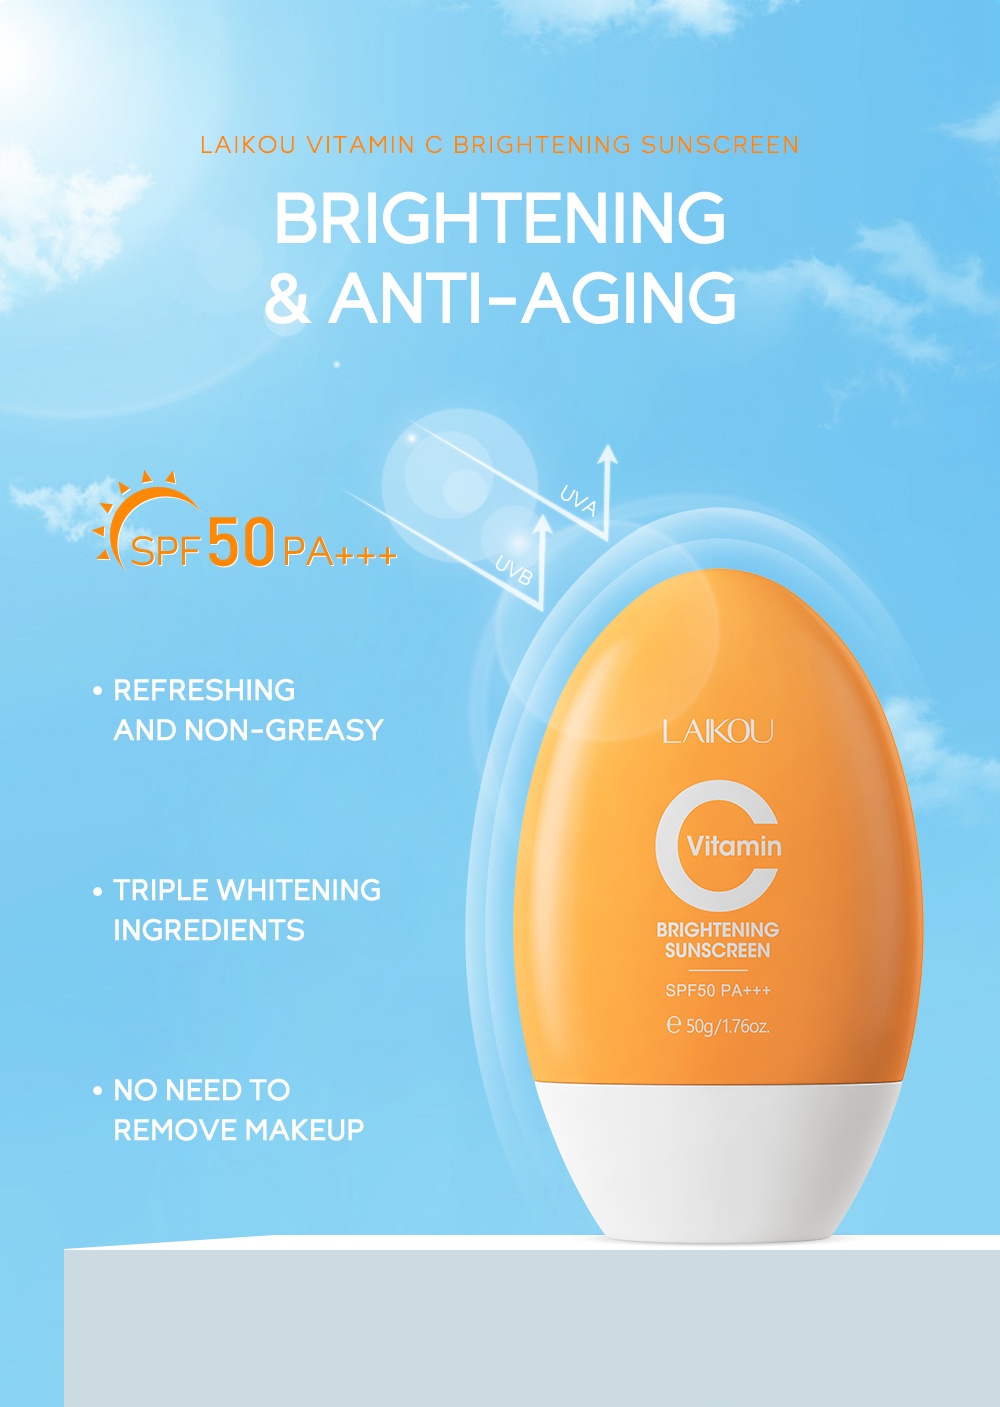 Laikou Vitamin C Sunscreen Brightening Uv Sunblock Spf50 Pa+++ 50G Sg 11134202 23010 Jyrear0Tc1Lv7E